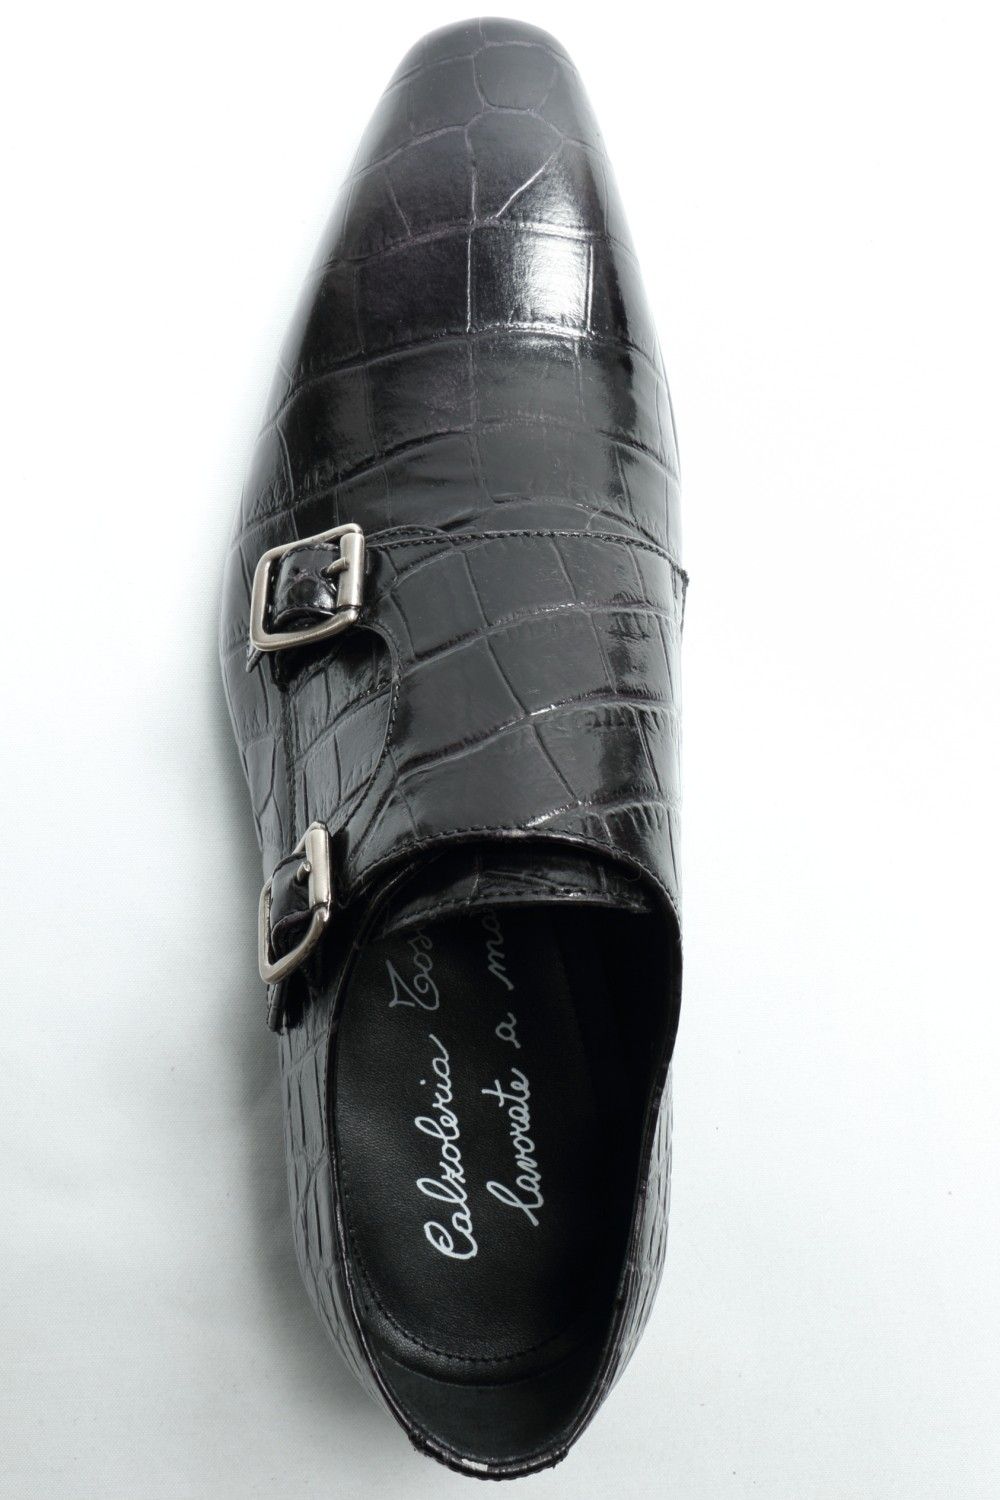 タヌキさんの革靴一覧はこちらCALZOLERIA TOSCANA ダブルモンク クロコ型押し 革靴 43